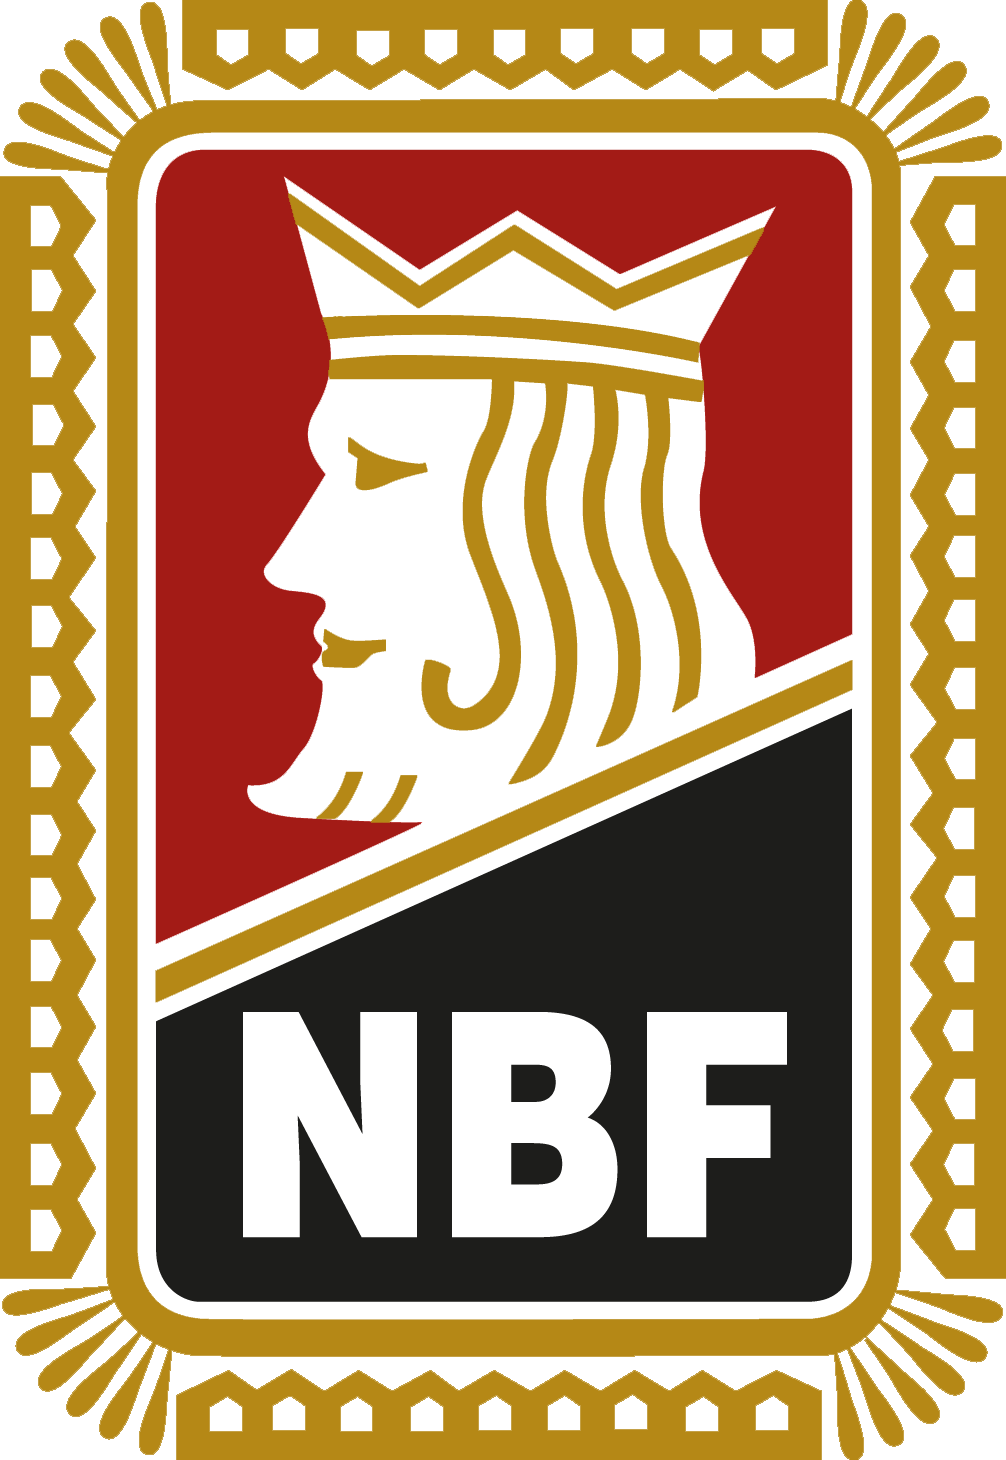 Norwegian Bridge Federation logo